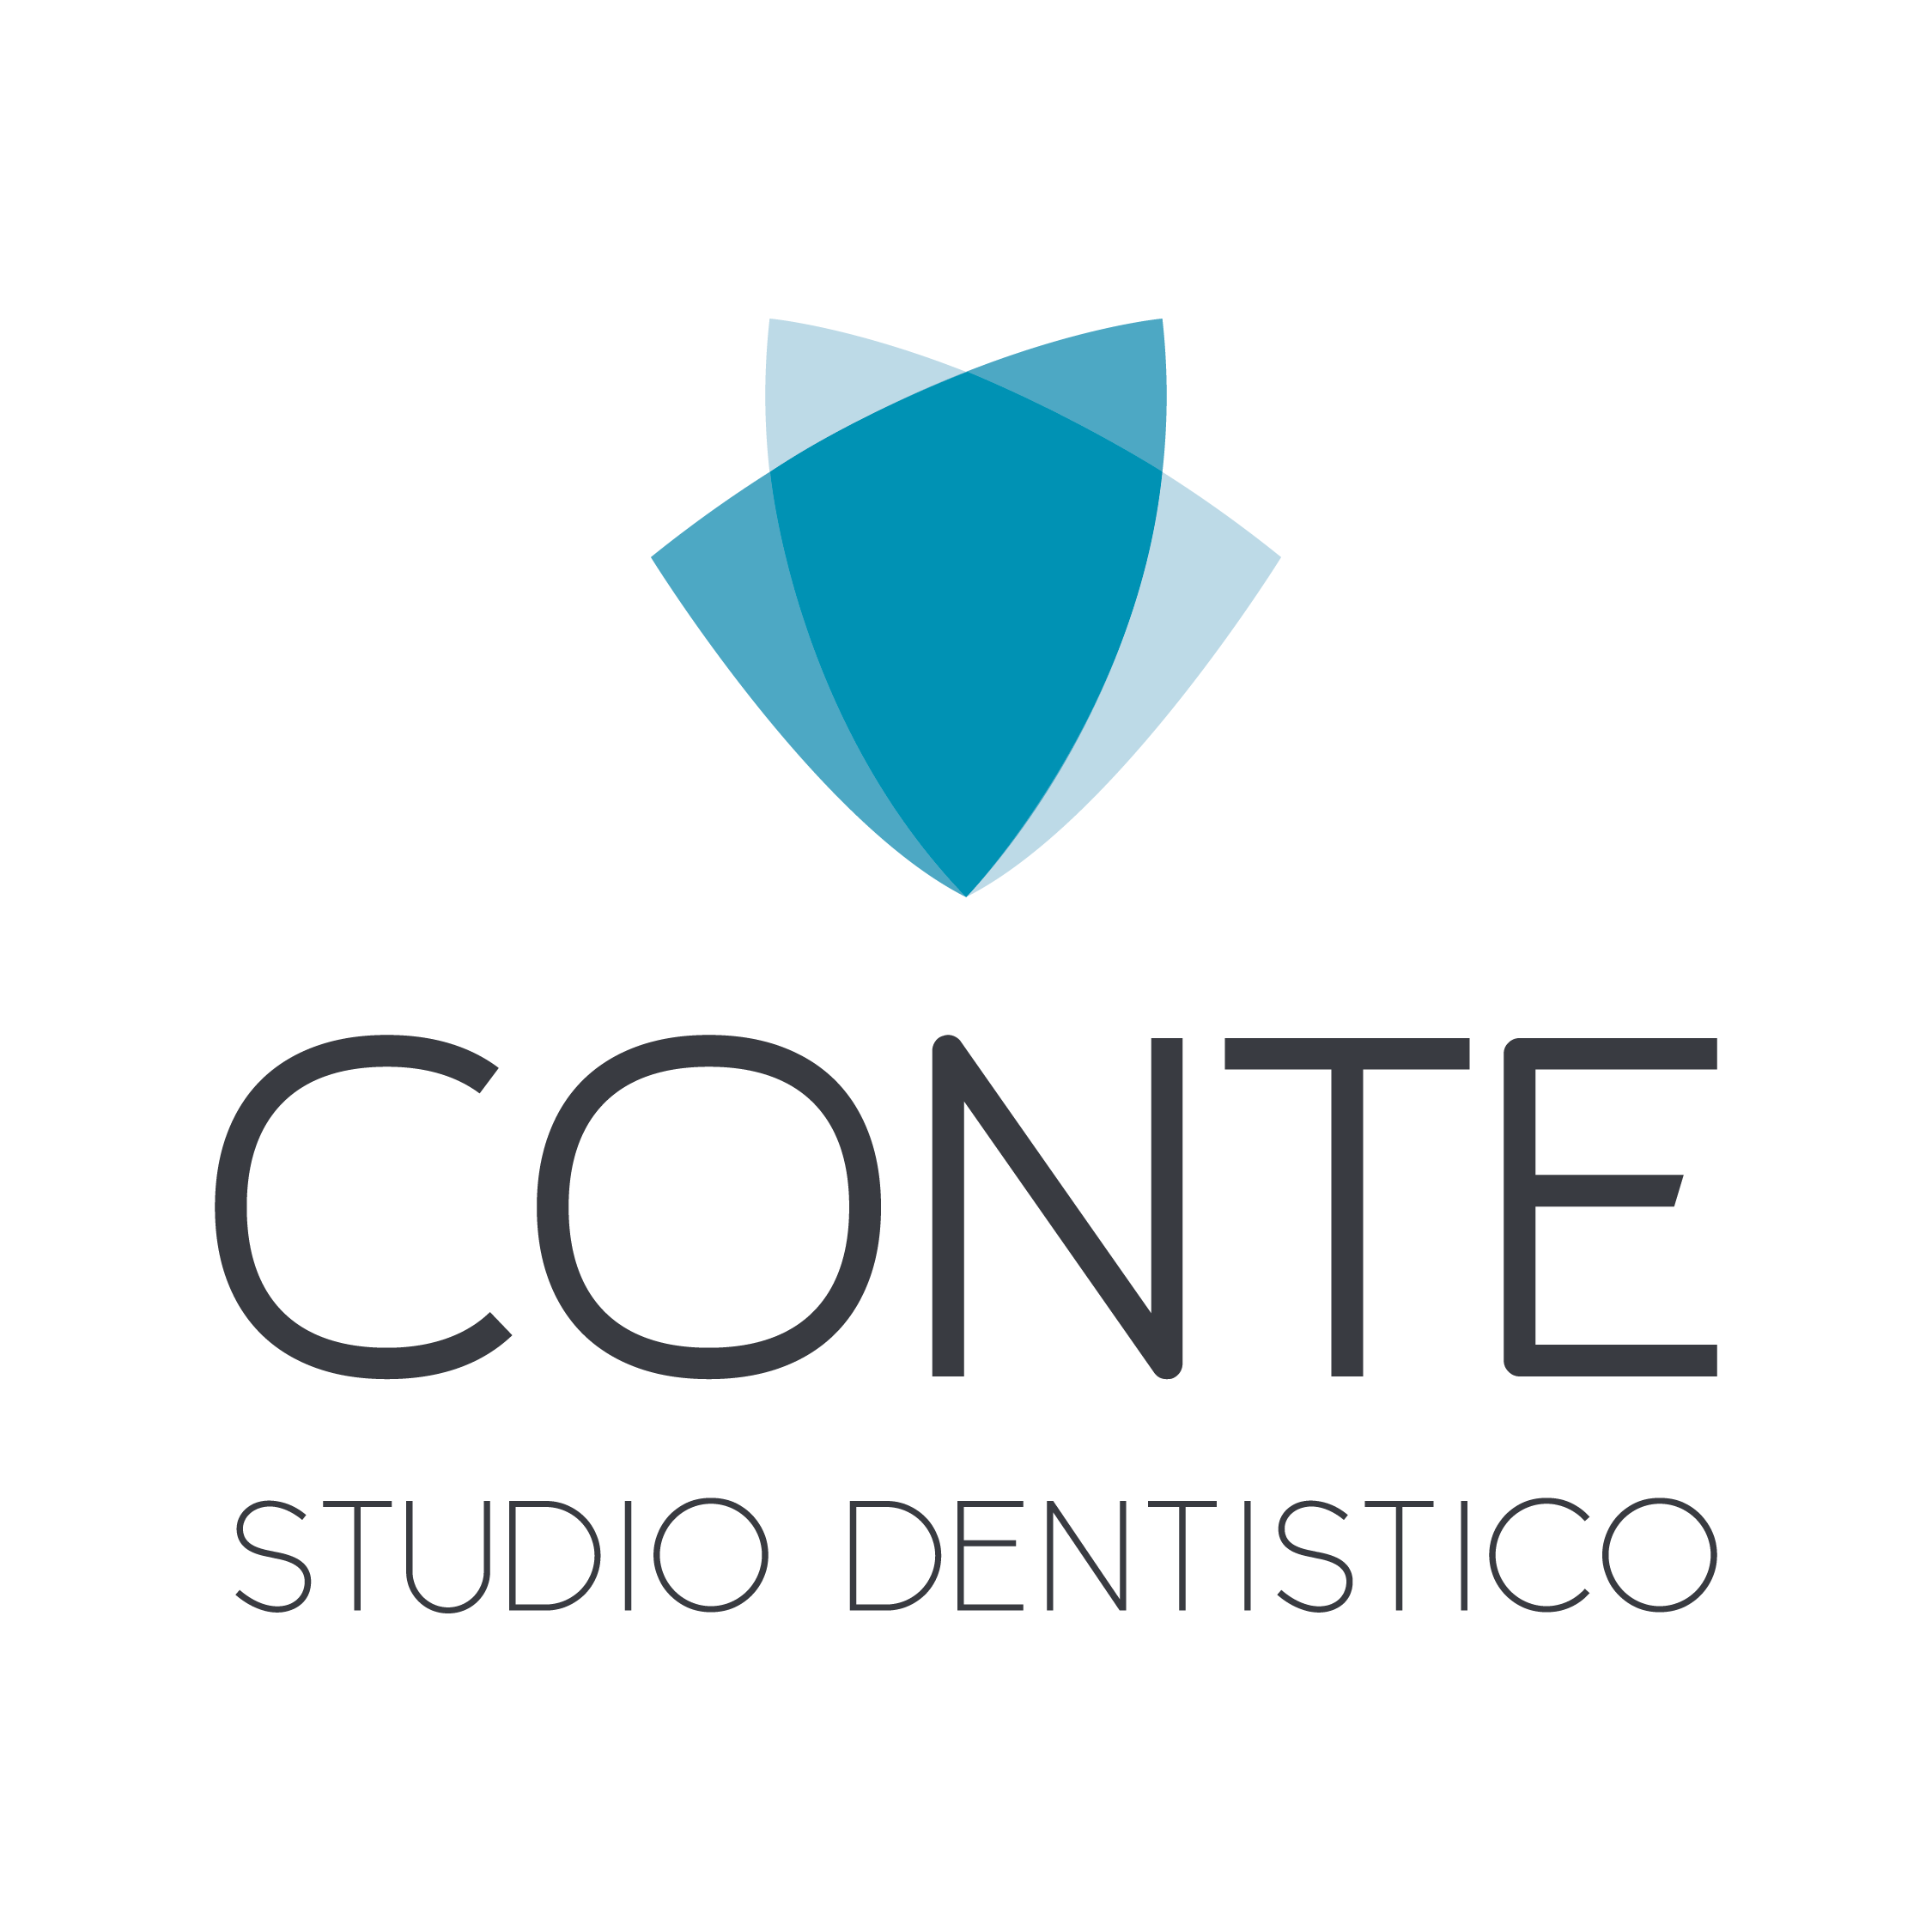 Studio Dentistico Conte S.r.l.